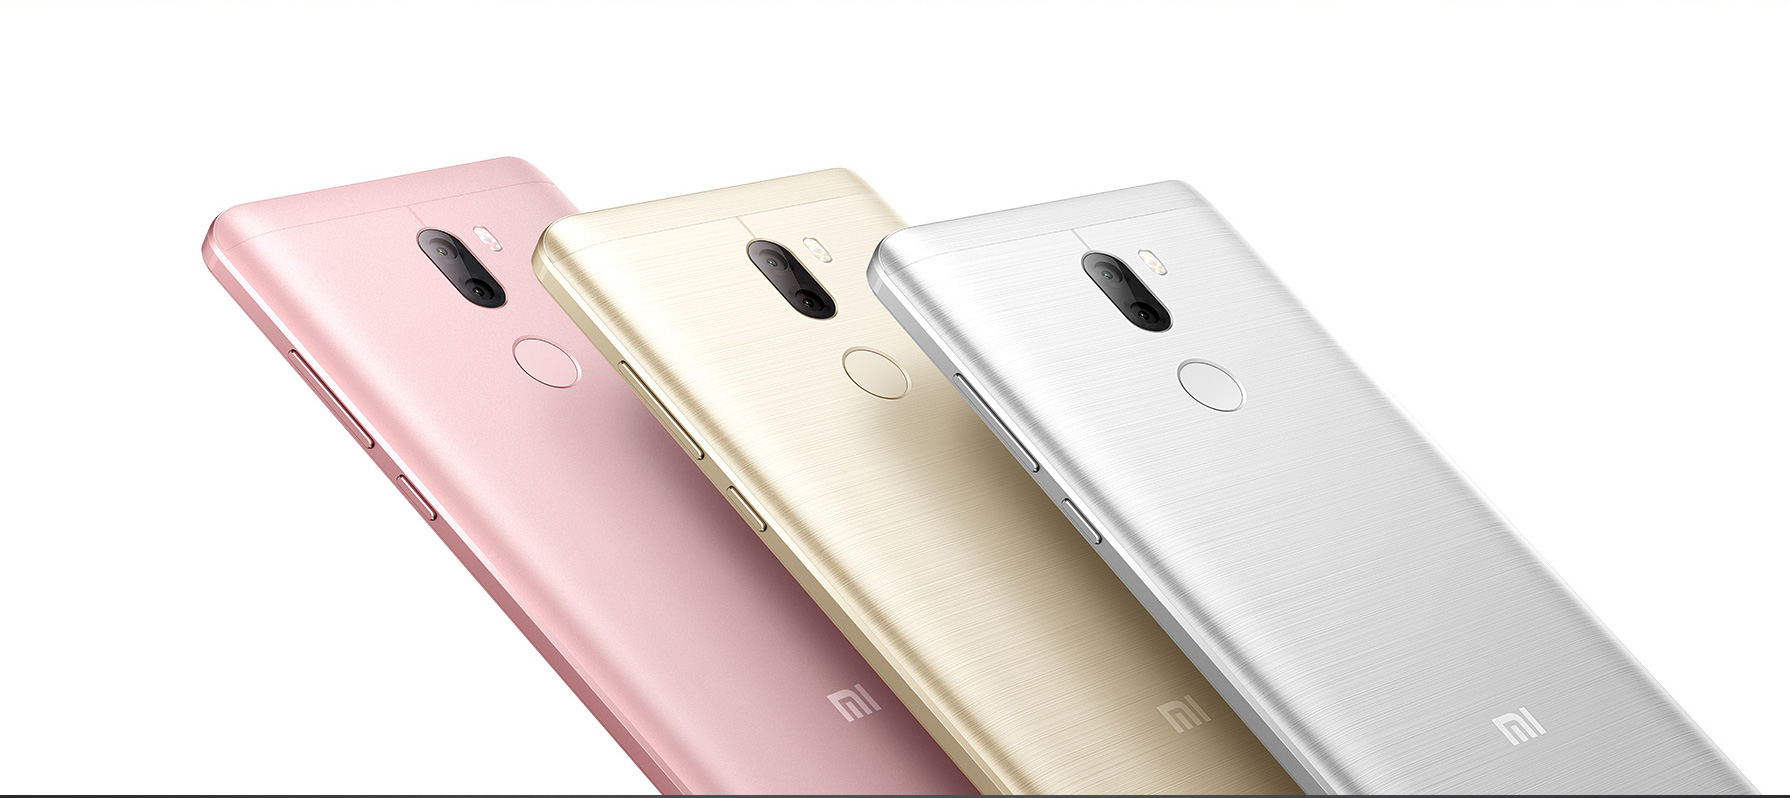 Xiaomi Mi5S Plus цветовые решения: белый, розовый и золотой